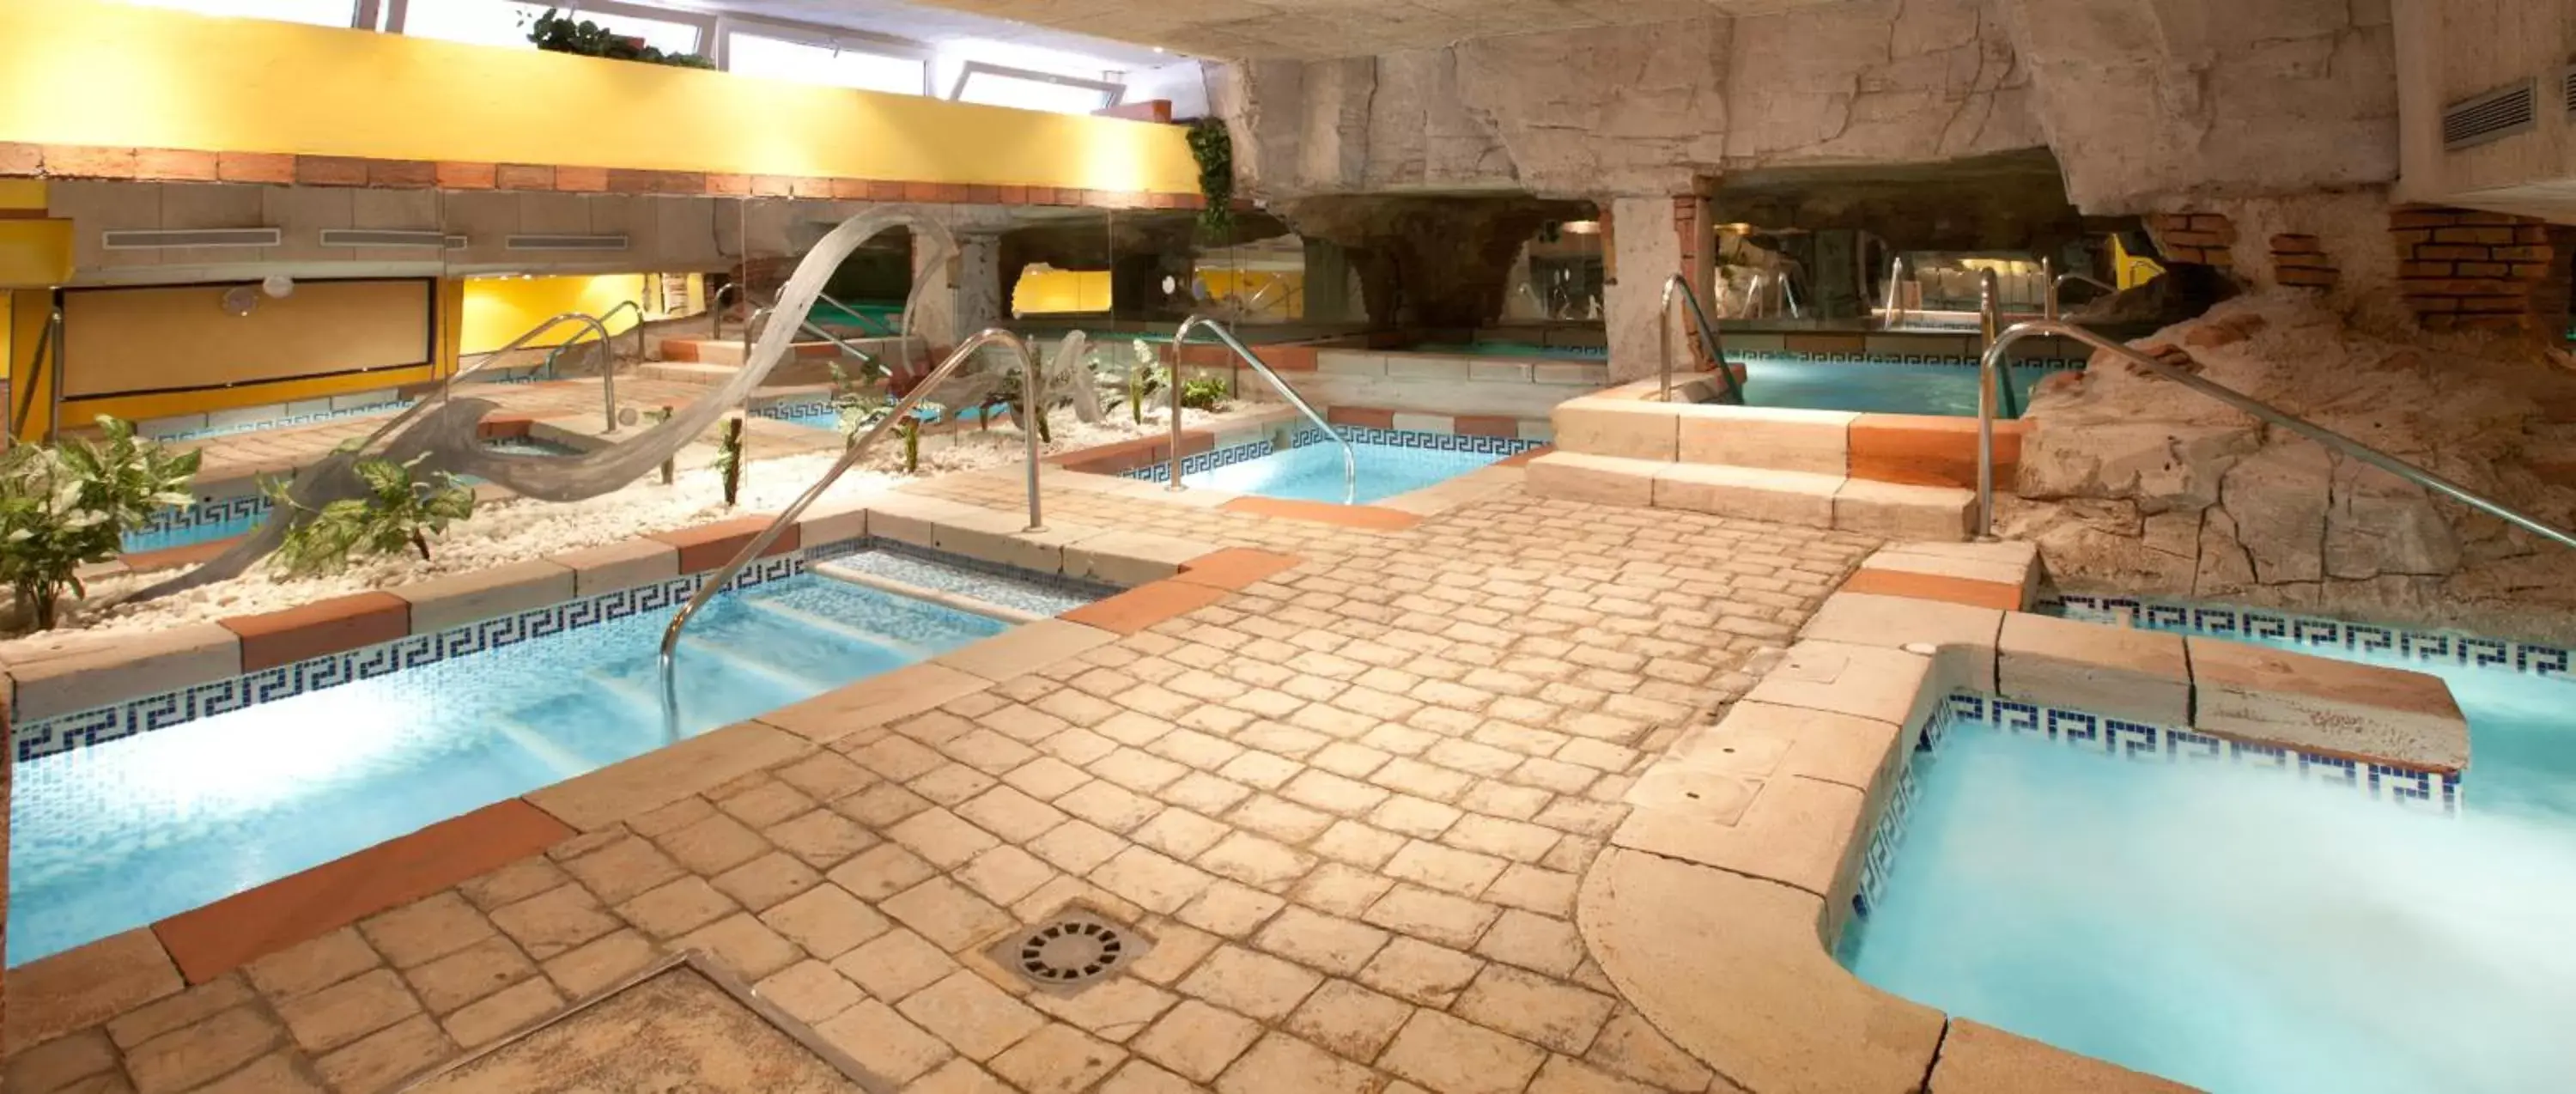 Hot Spring Bath, Swimming Pool in Senator Cádiz Spa Hotel